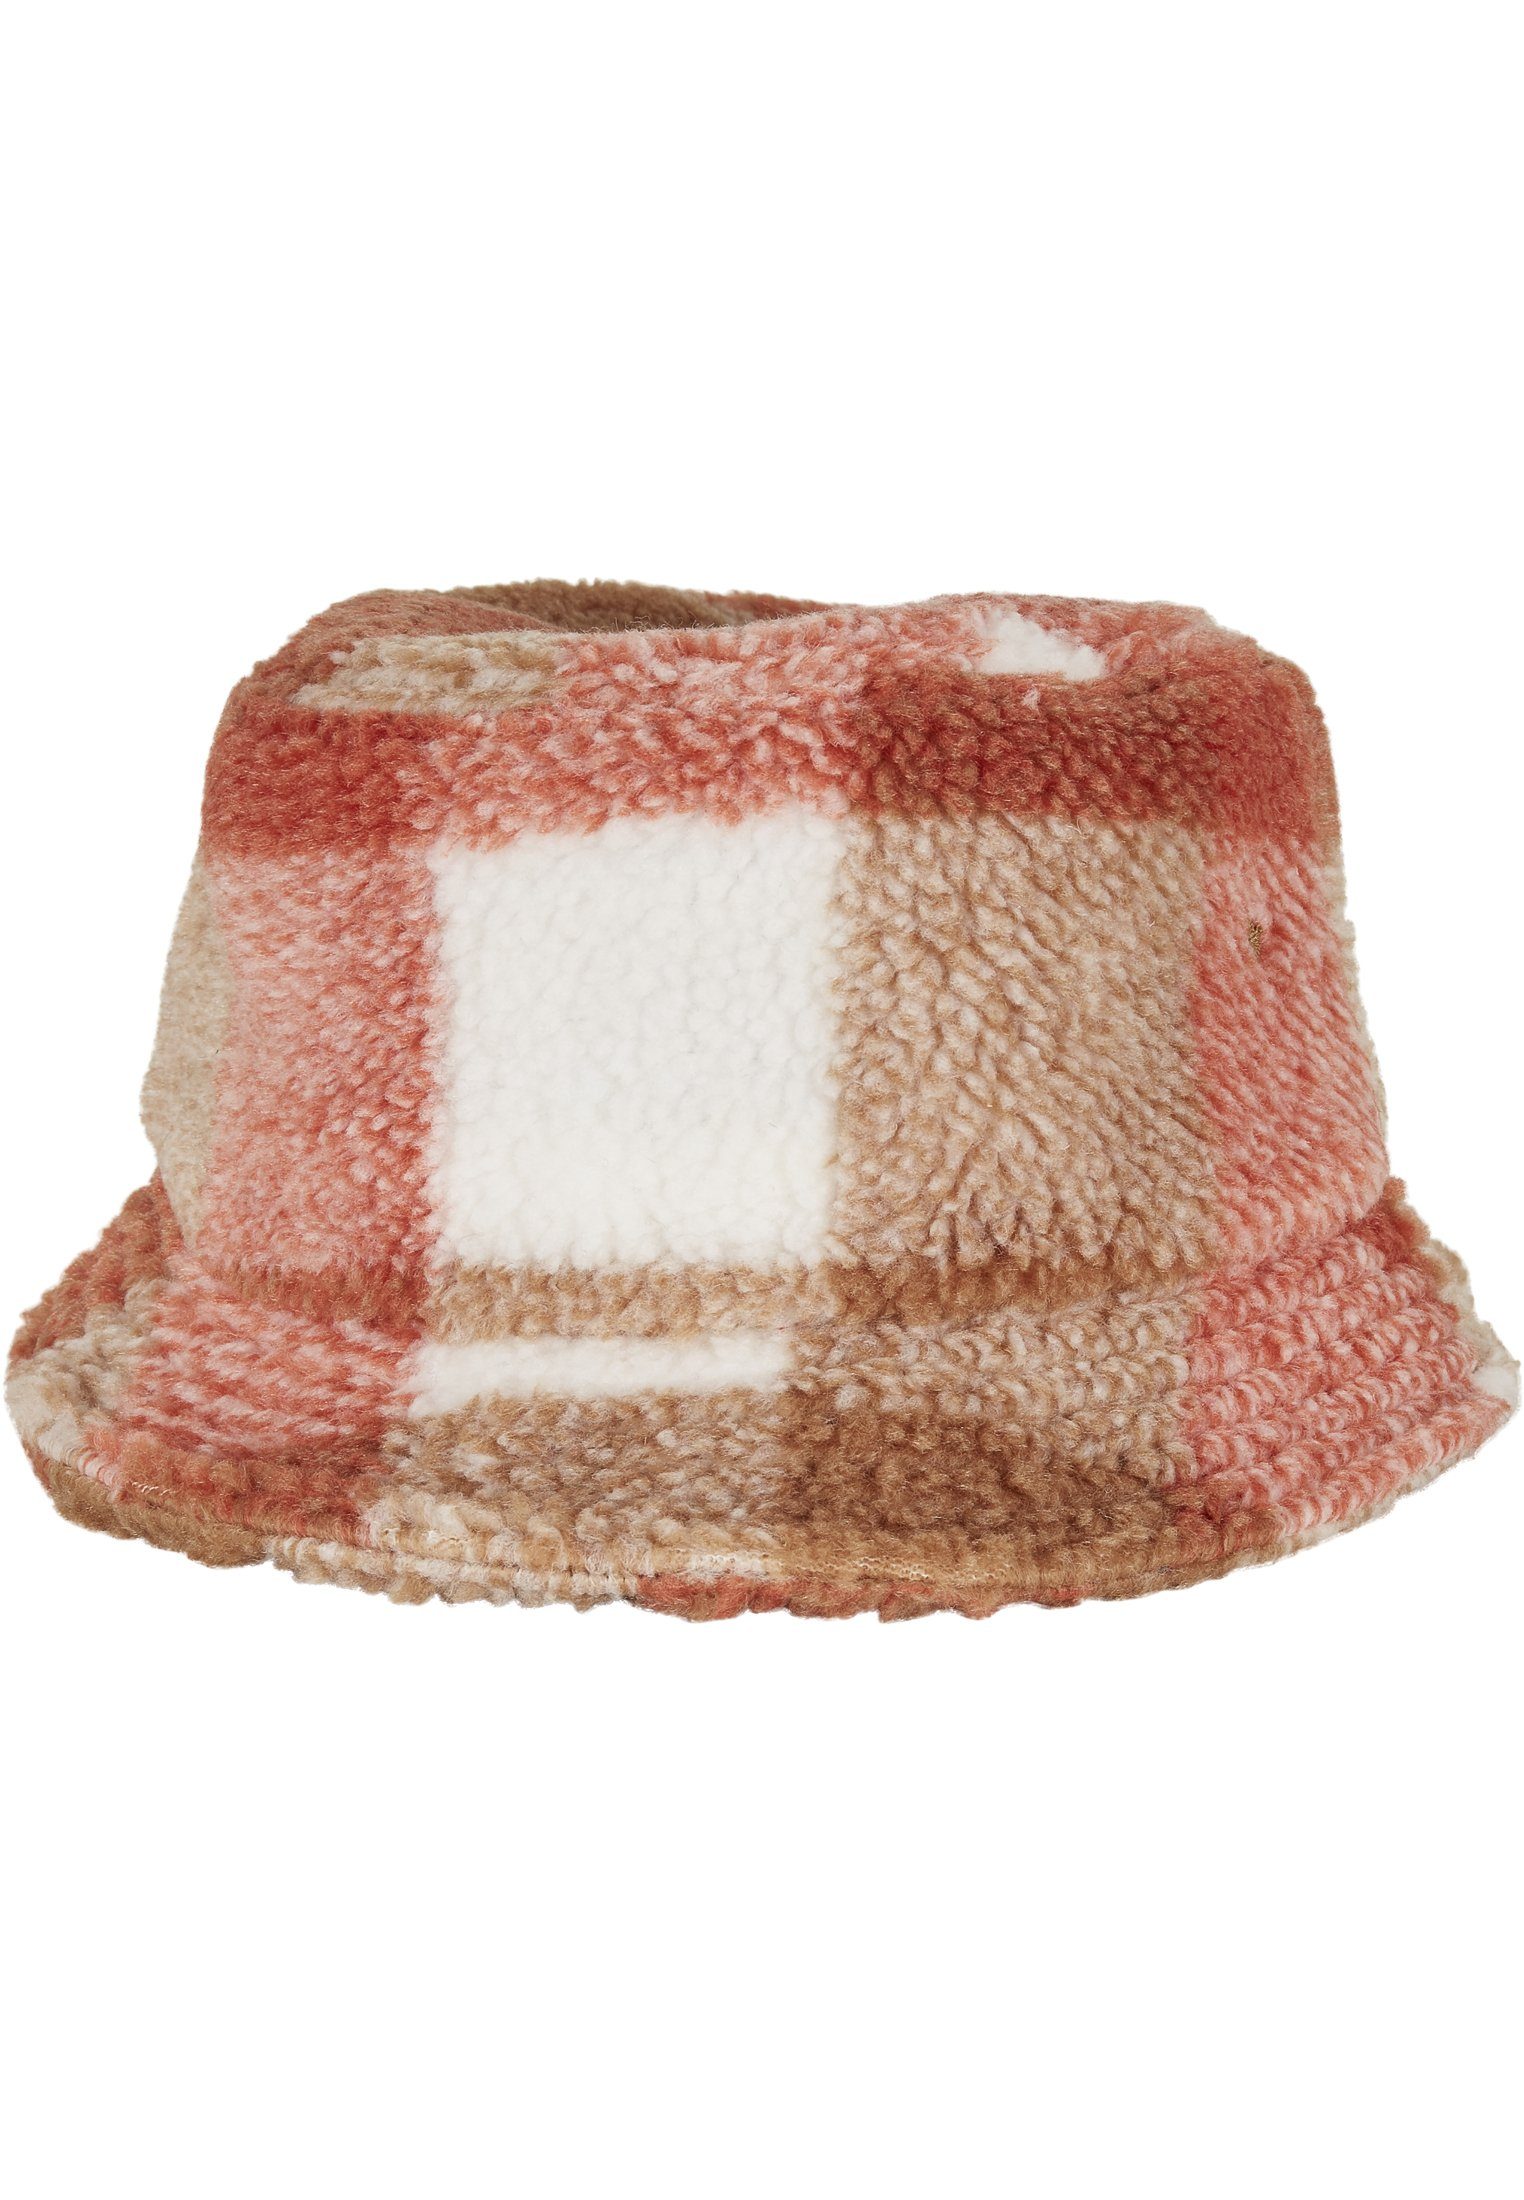 Flexfit Flex Cap Bucket Hat Sherpa Check Bucket Hat whitesand/toffee | Flex Caps